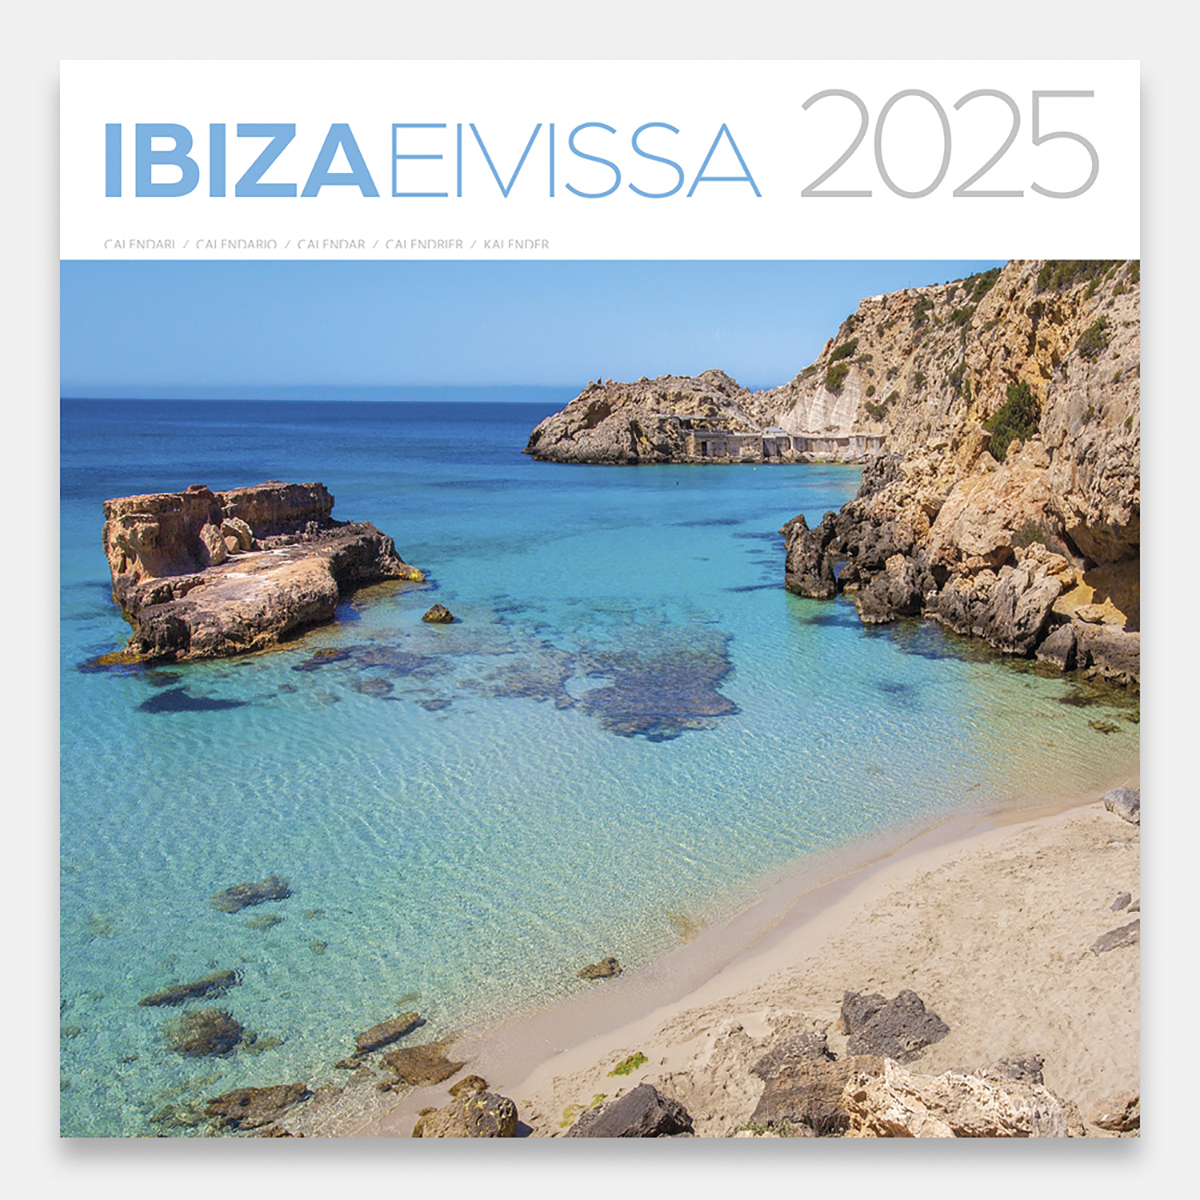 Calendario 2025 Ibiza 25eig calendario pared 2025 ibiza eivissa